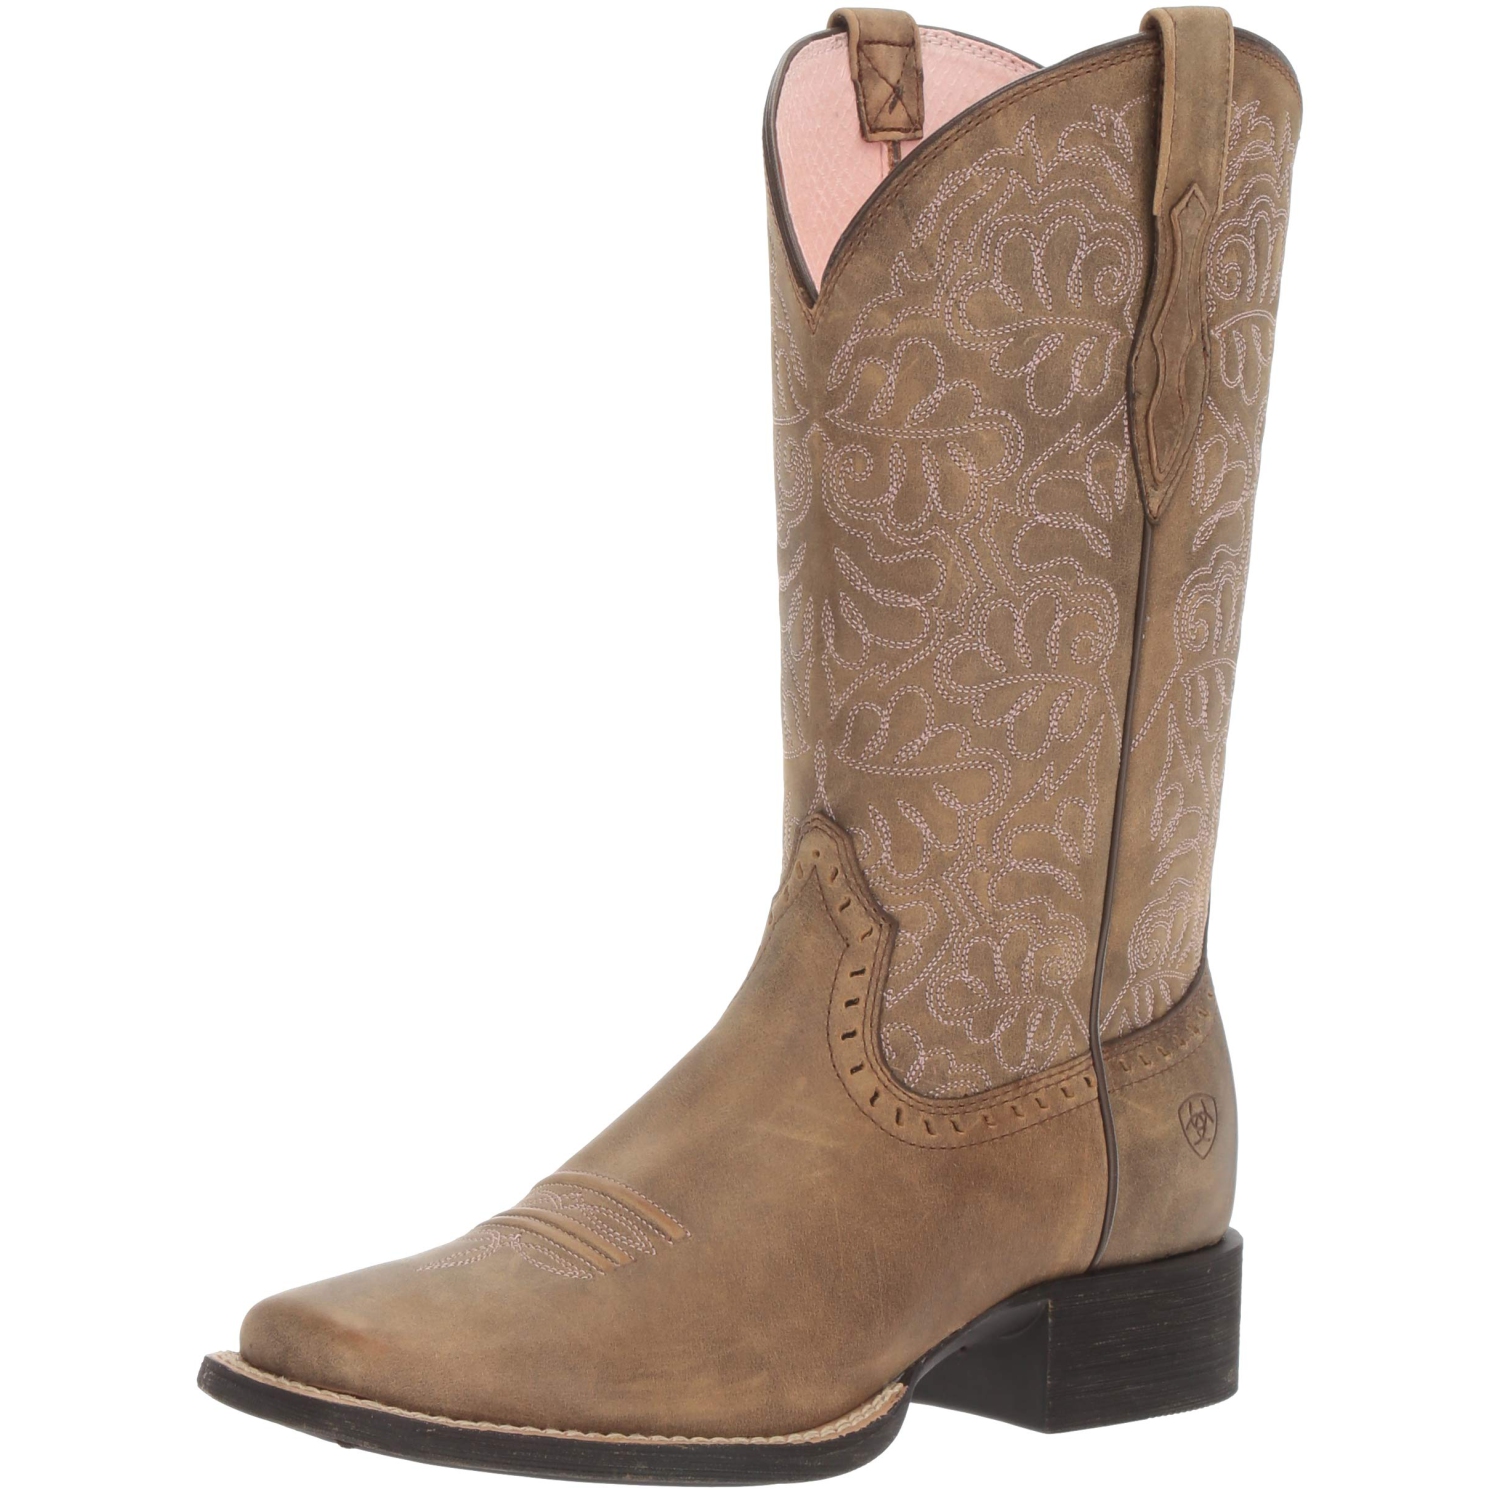 Ariat Women's Round up Remuda Western Cowboy Boot